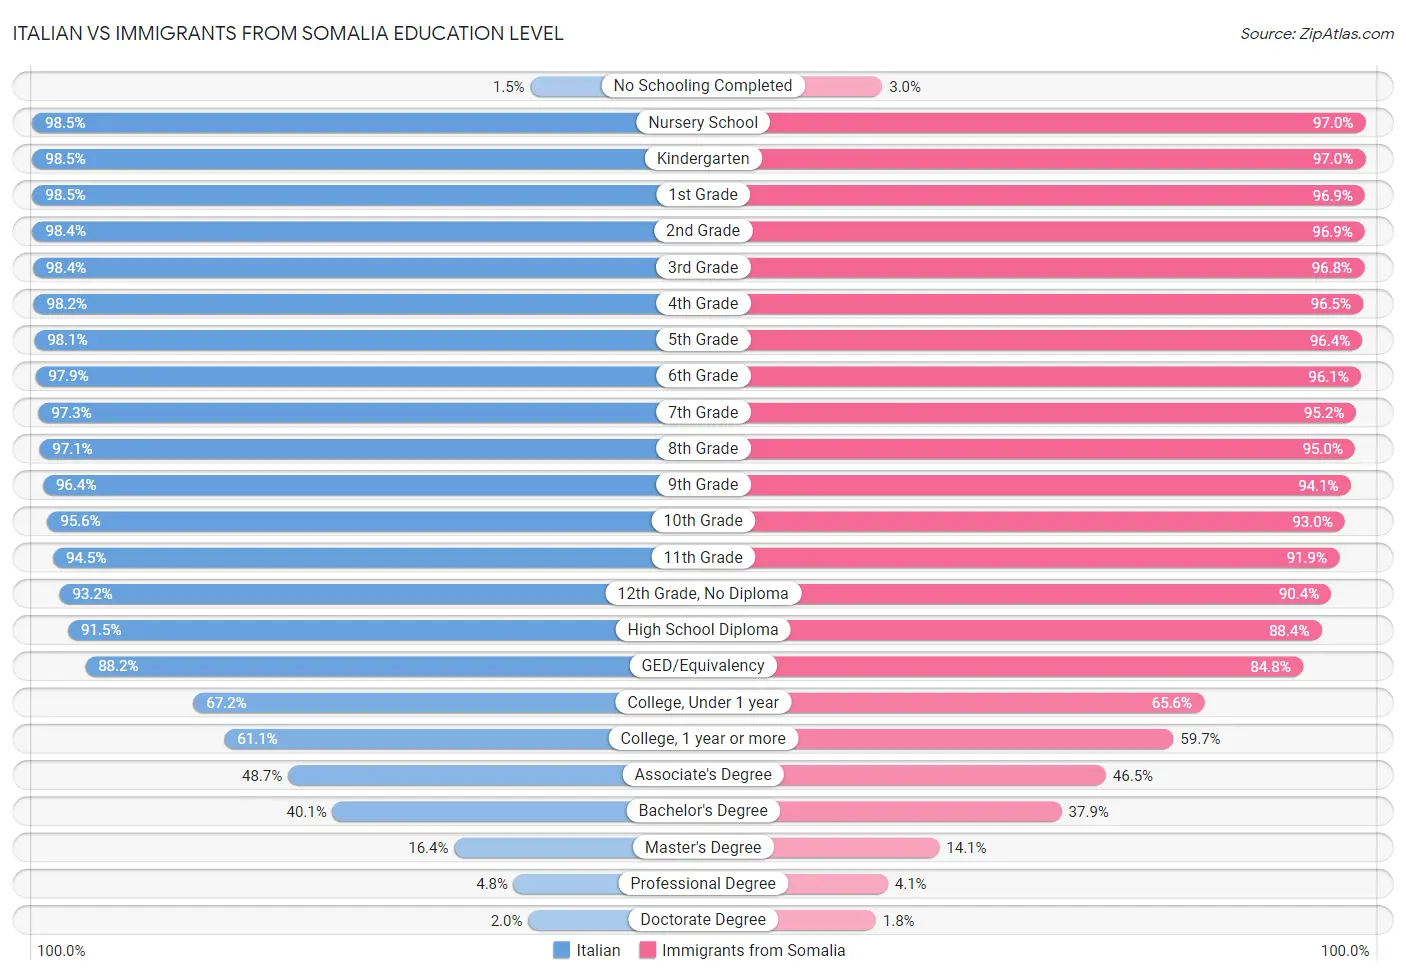 Italian vs Immigrants from Somalia Education Level